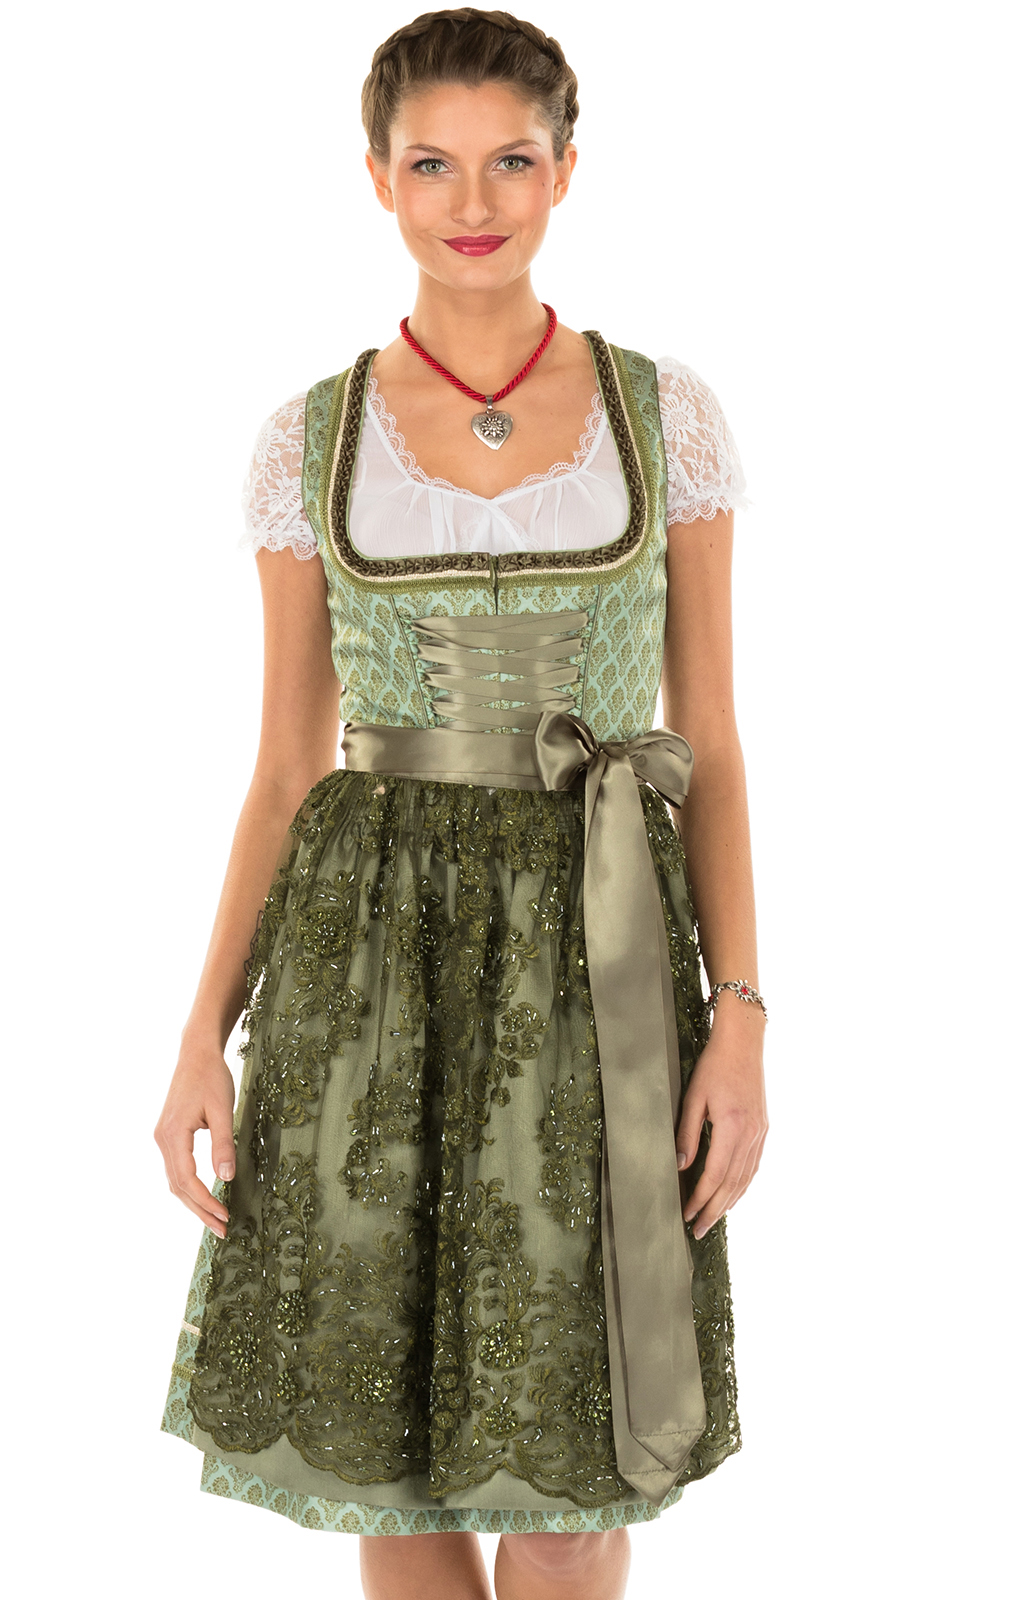 Fashion Traditional Dresses Dirndl Krüger Kr\u00fcger Dirndl brown-green elegant 